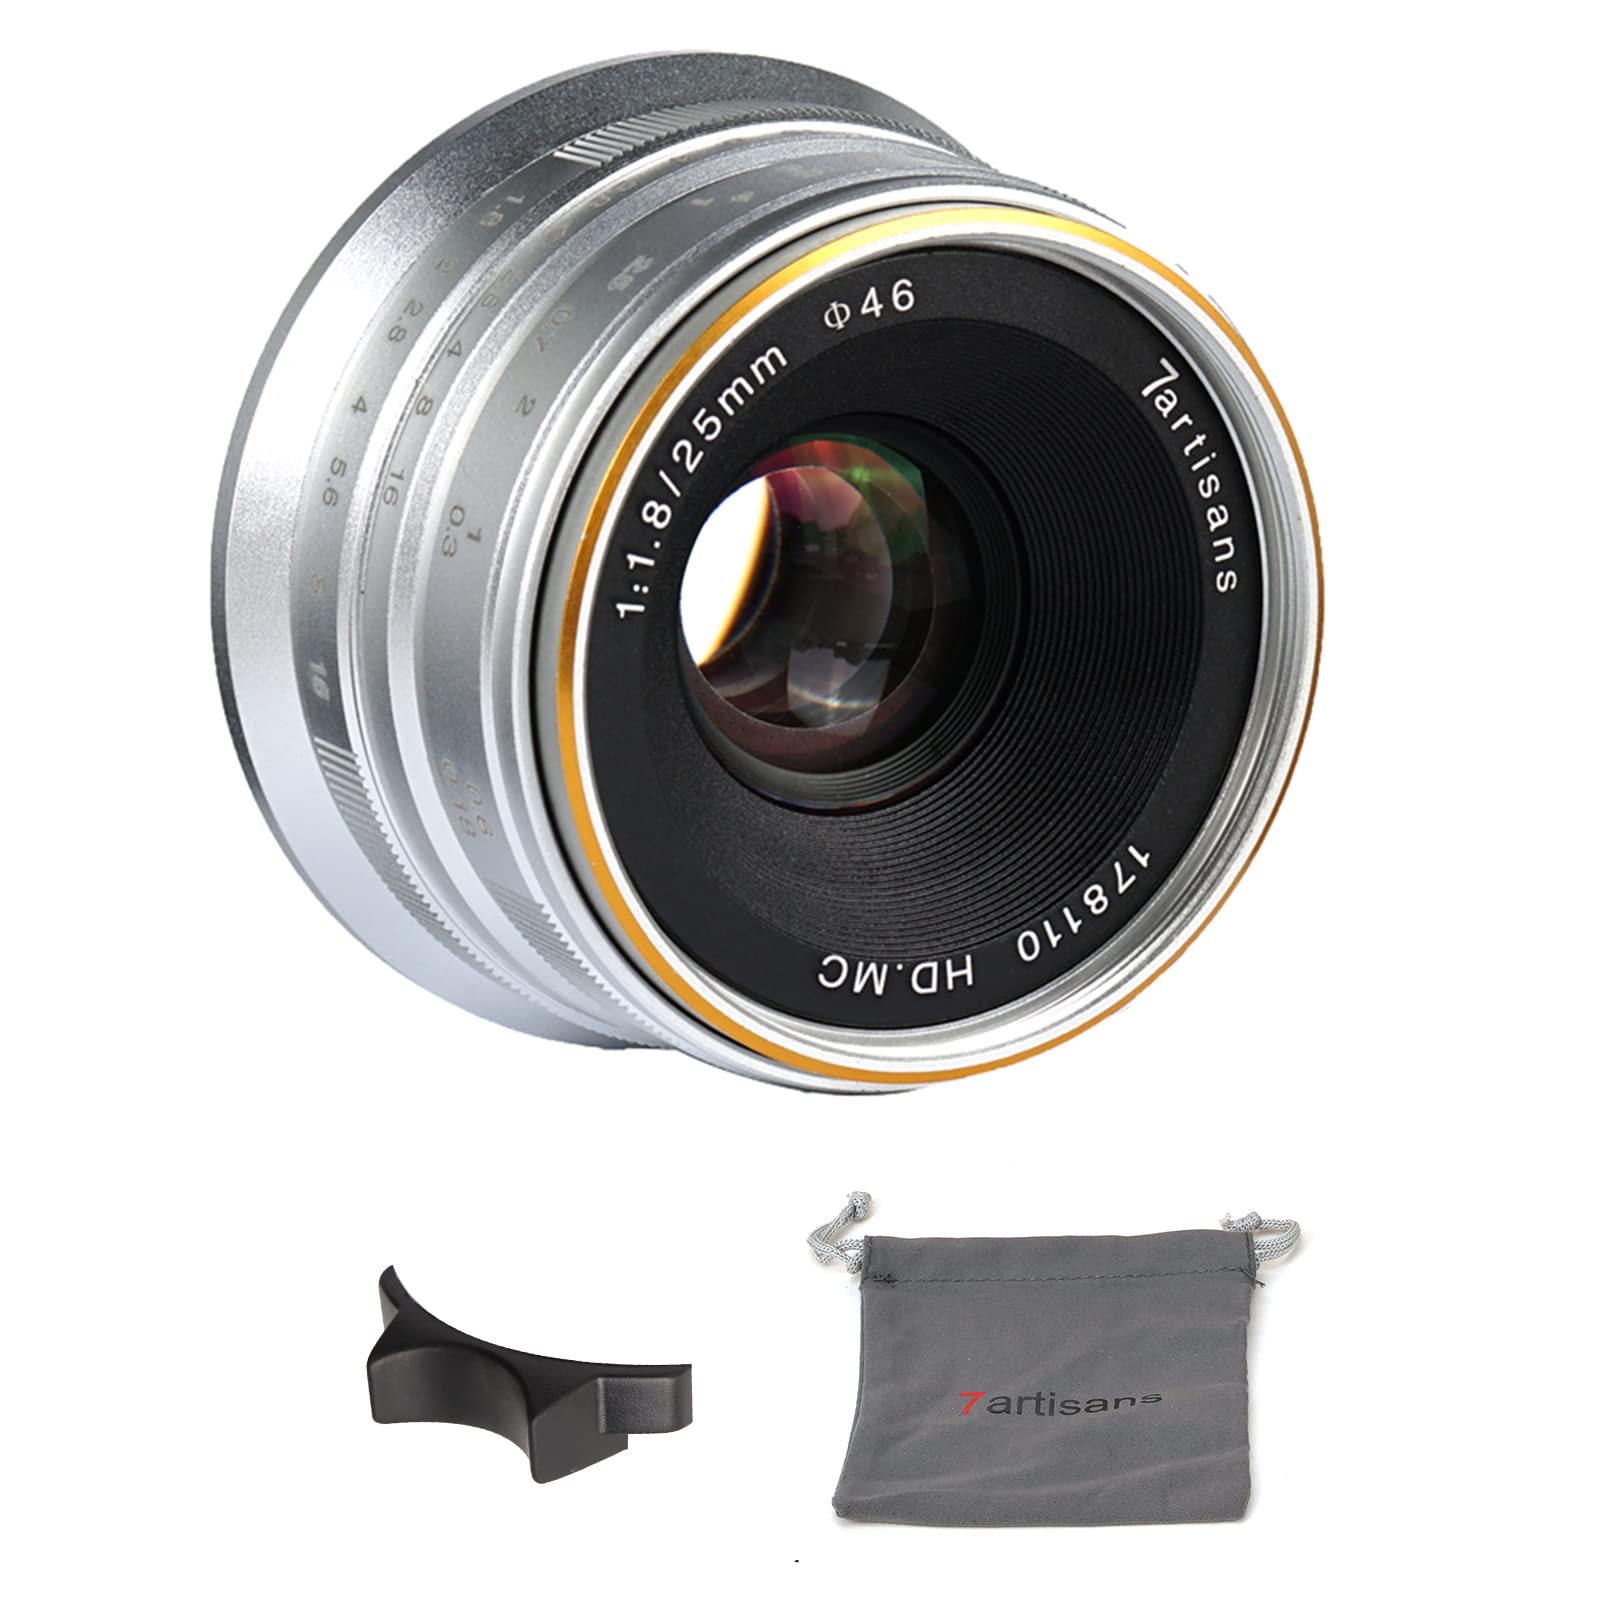 7artisans 25mm F1.8 Manueller Fokus Objektiv für Sony EMOUNT Kameras wie A7 a7II A7R a7rii A7S a7sii A6500 A6300 A6000 A5100 A5000 ex-3 NEX-3 N nex-3r F3 K NEX-5 N - Silber